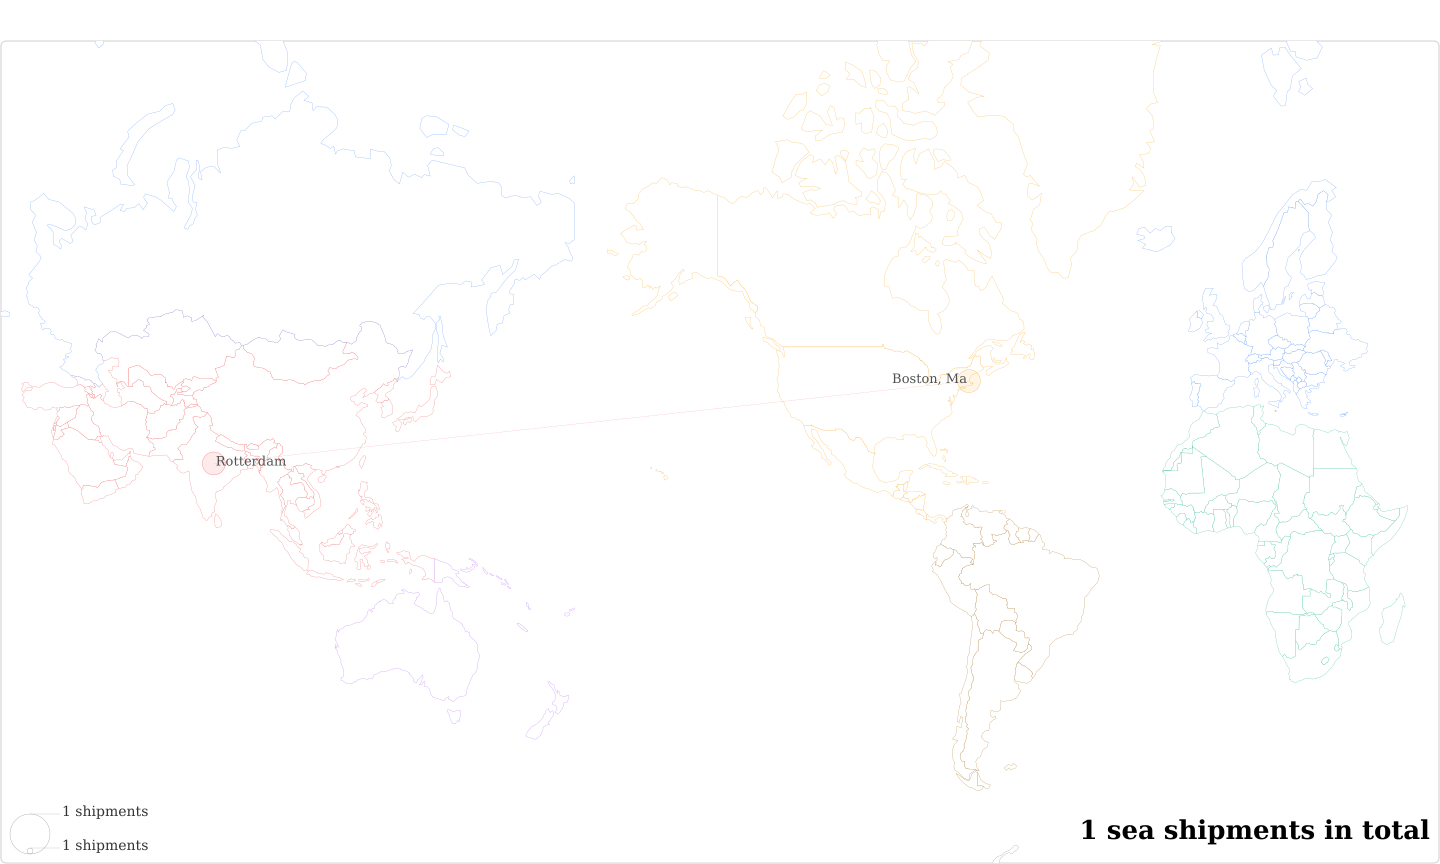 Khazana Restaurant's Imports Per Country Map